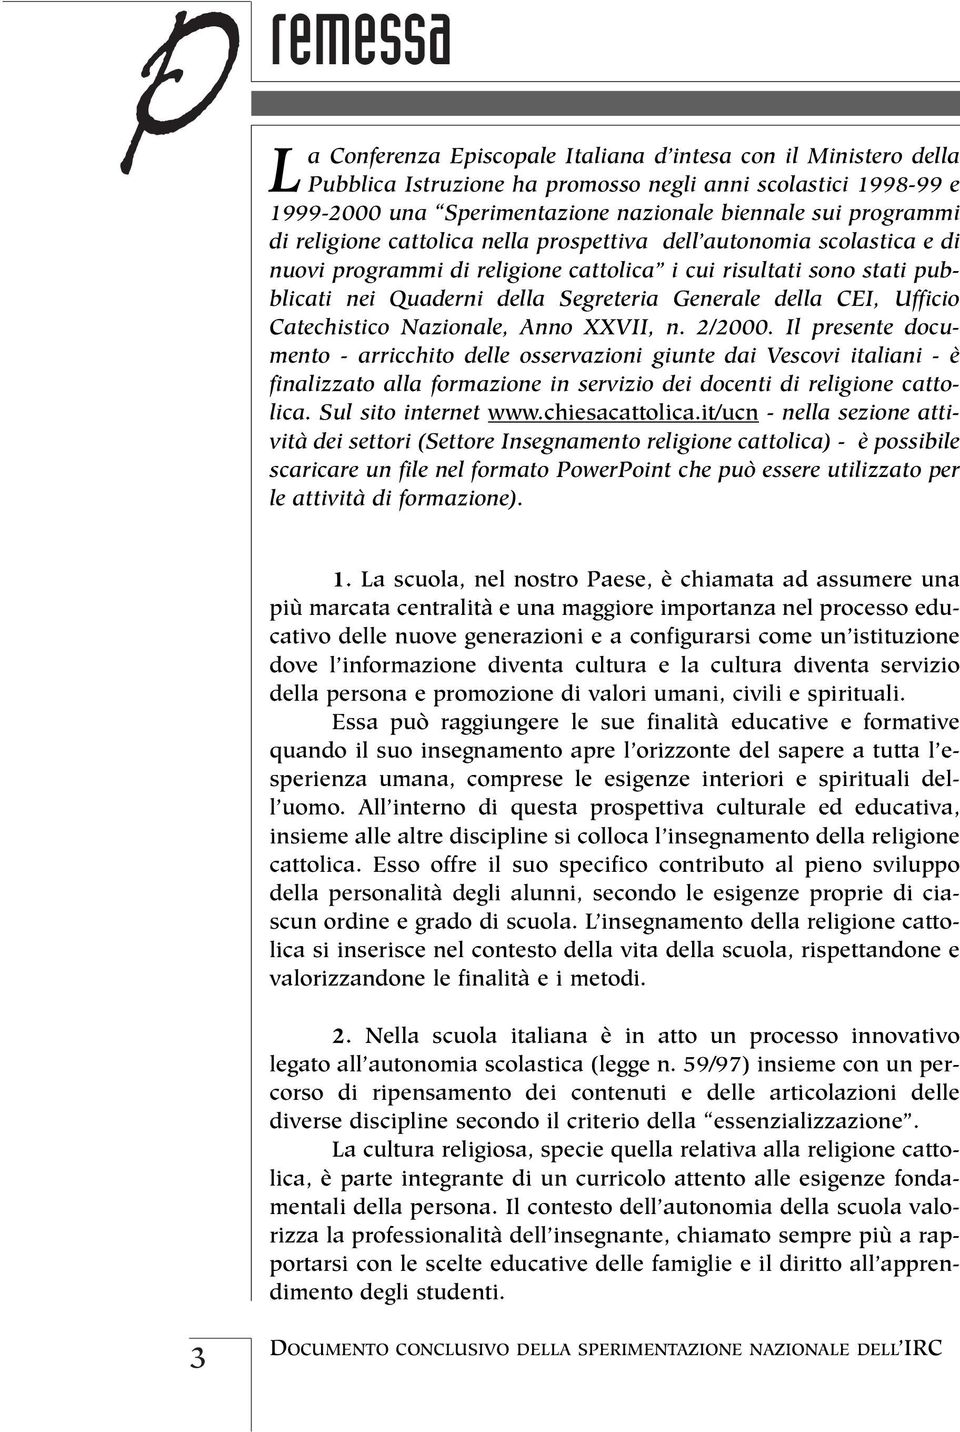 della CEI, Ufficio Catechistico Nazionale, Anno XXVII, n. 2/2000.